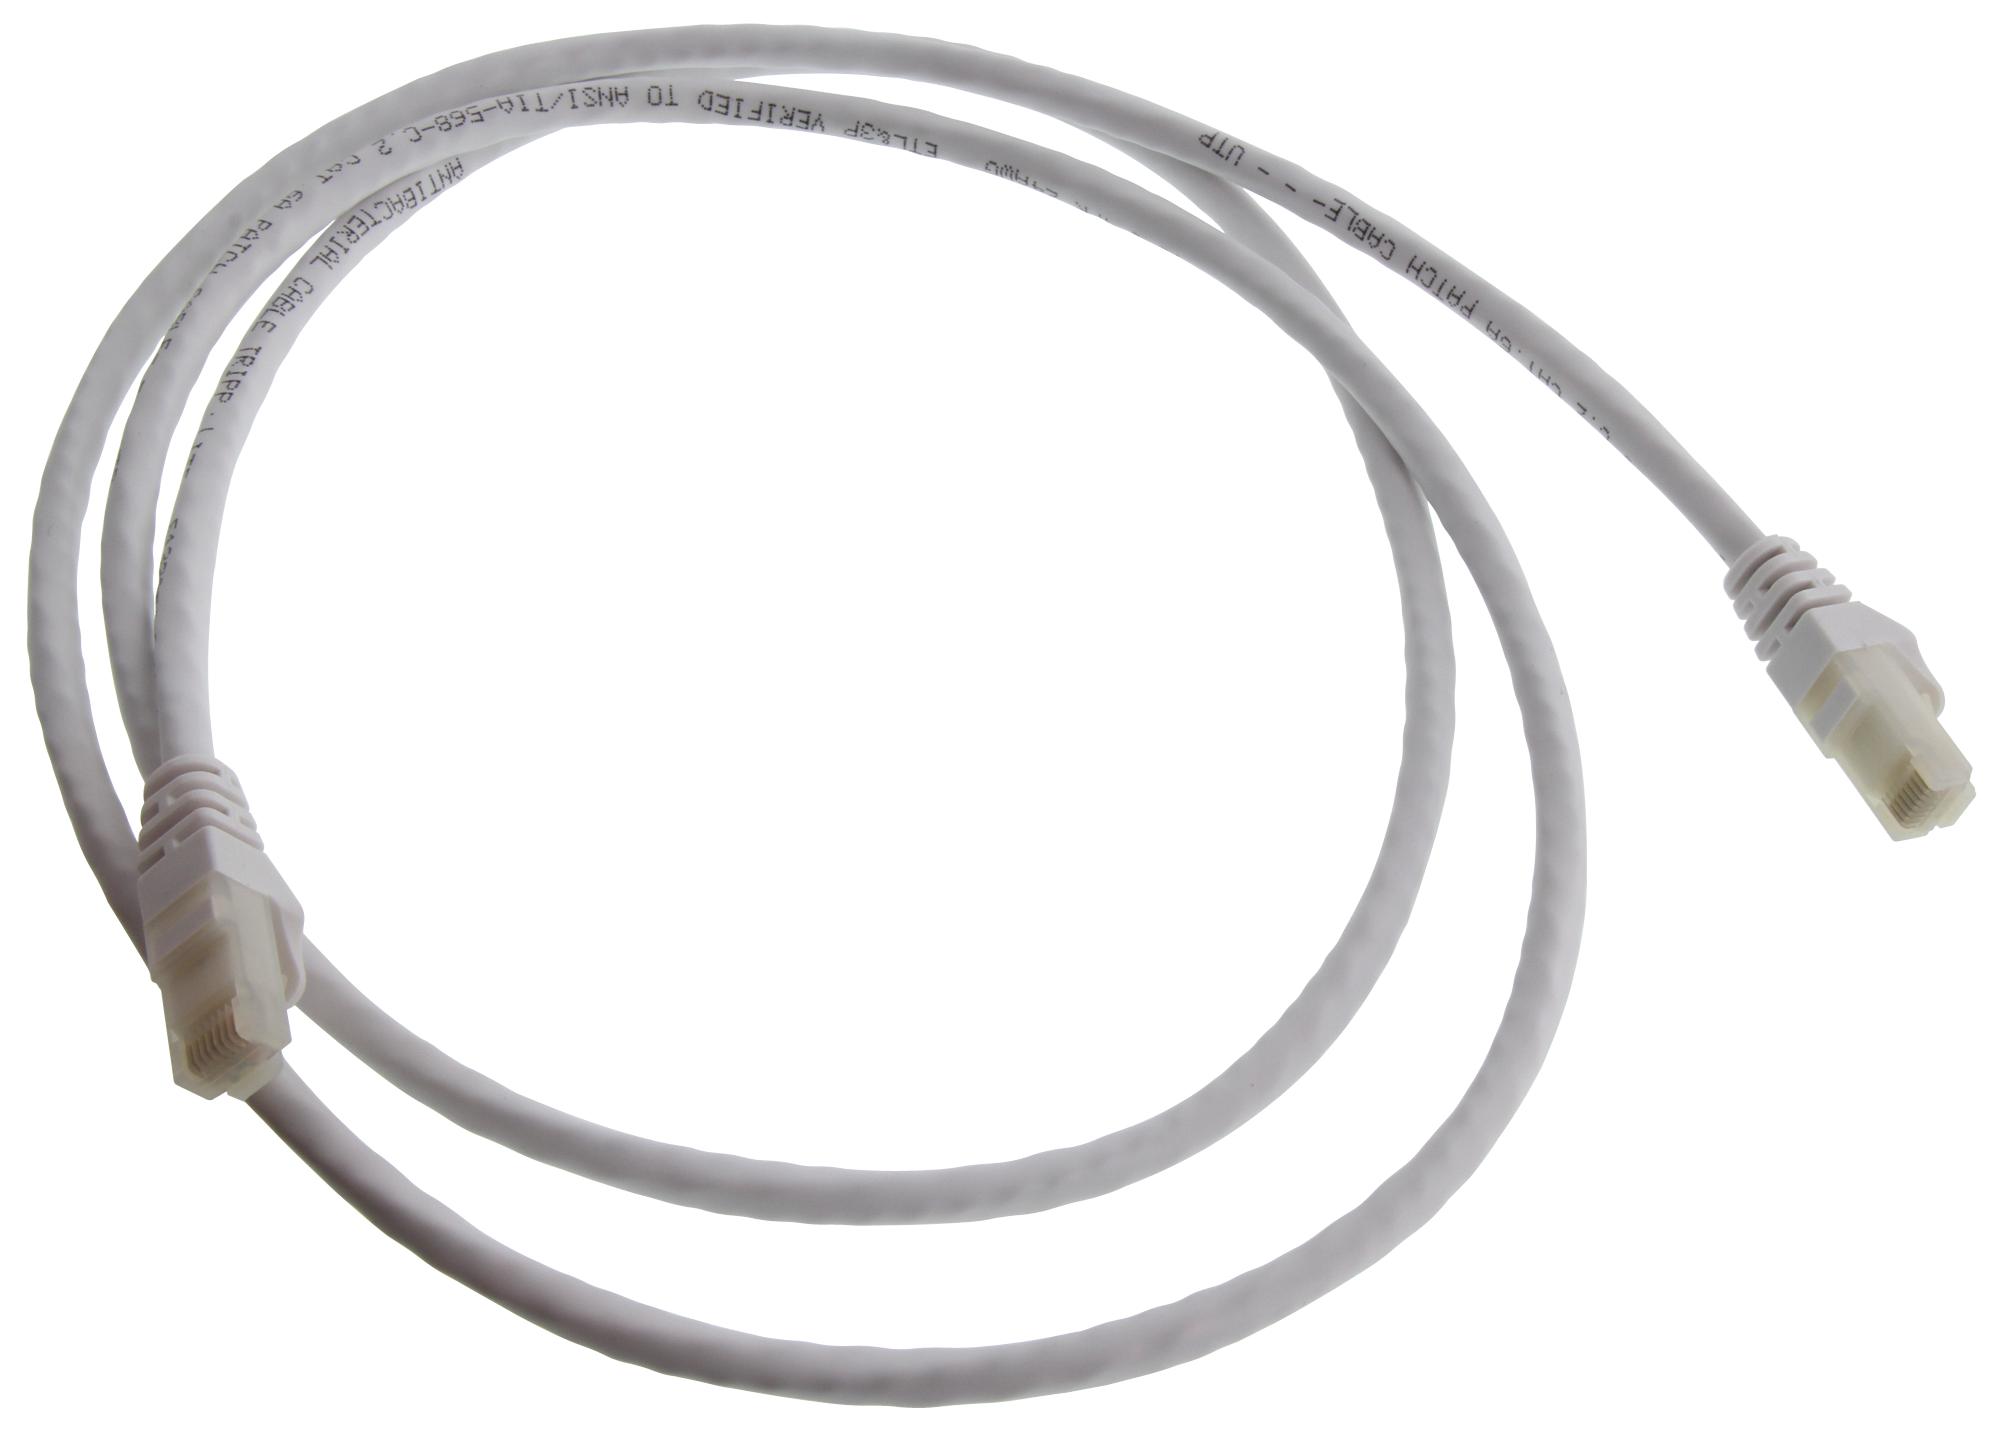 Eaton Tripp Lite N261Ab-005-Wh Enet Cable, Rj45 Plug-Plug, 5Ft, White